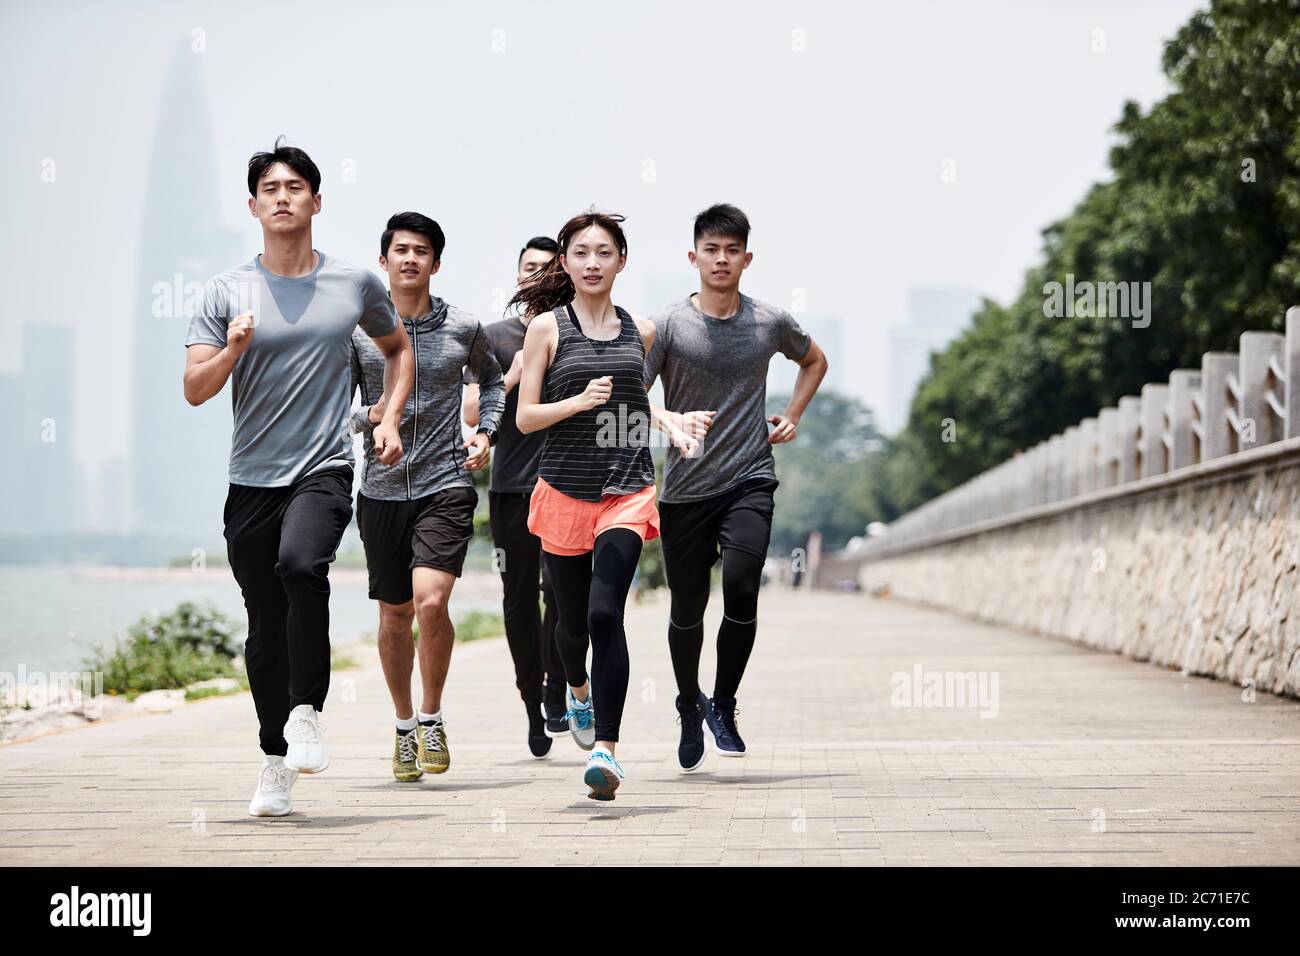 Gruppe von fünf jungen asiatischen erwachsenen Männern und Frauen laufen Training im Freien Stockfoto